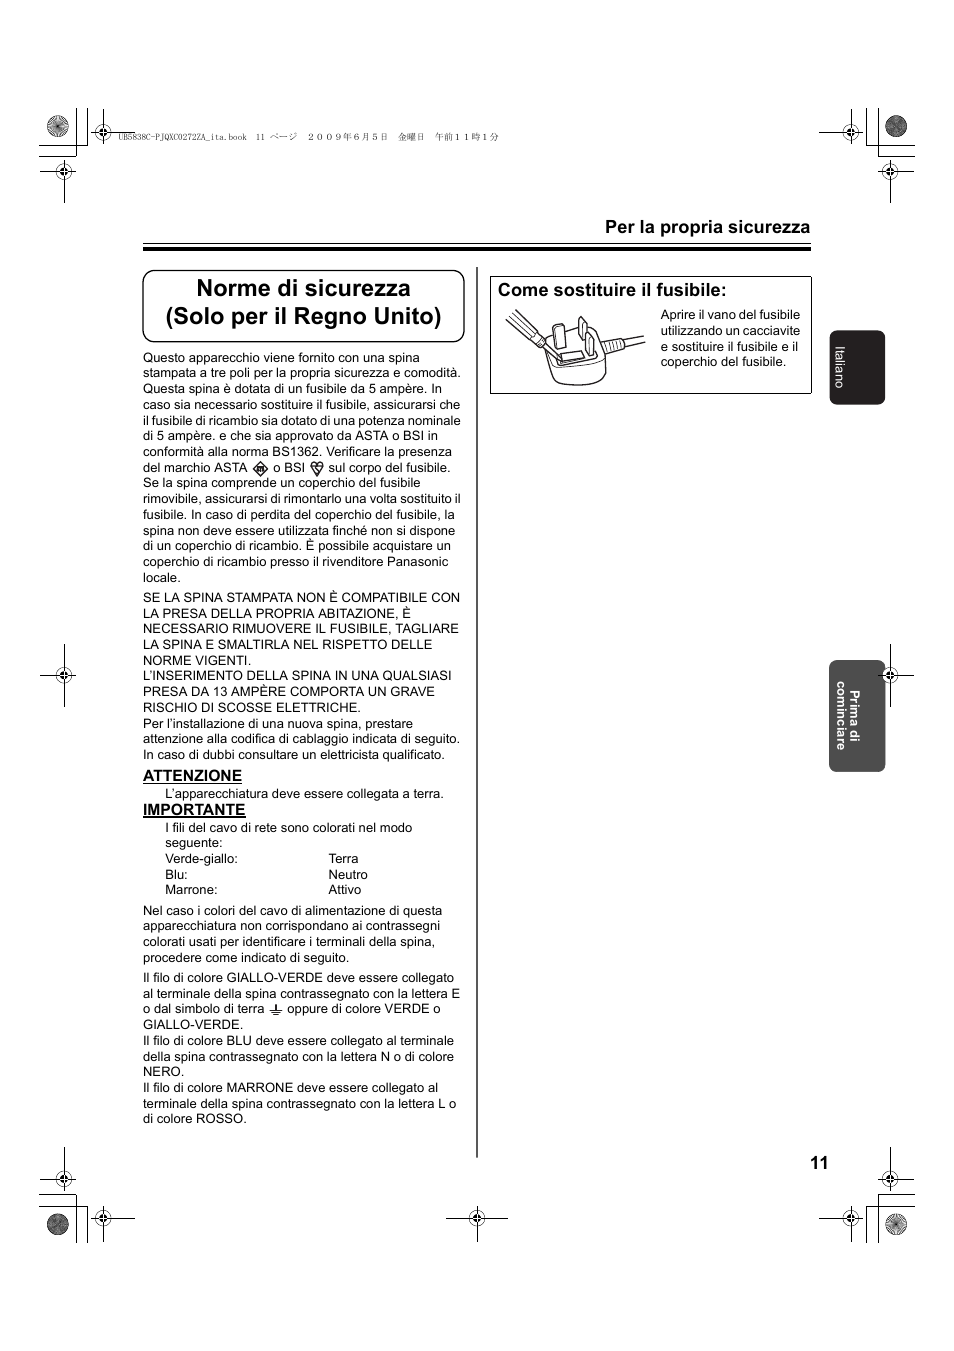 Norme di sicurezza (solo per il regno unito), Per la propria sicurezza 11, Come sostituire il fusibile | Panasonic UB5838C Manuale d'uso | Pagina 11 / 56